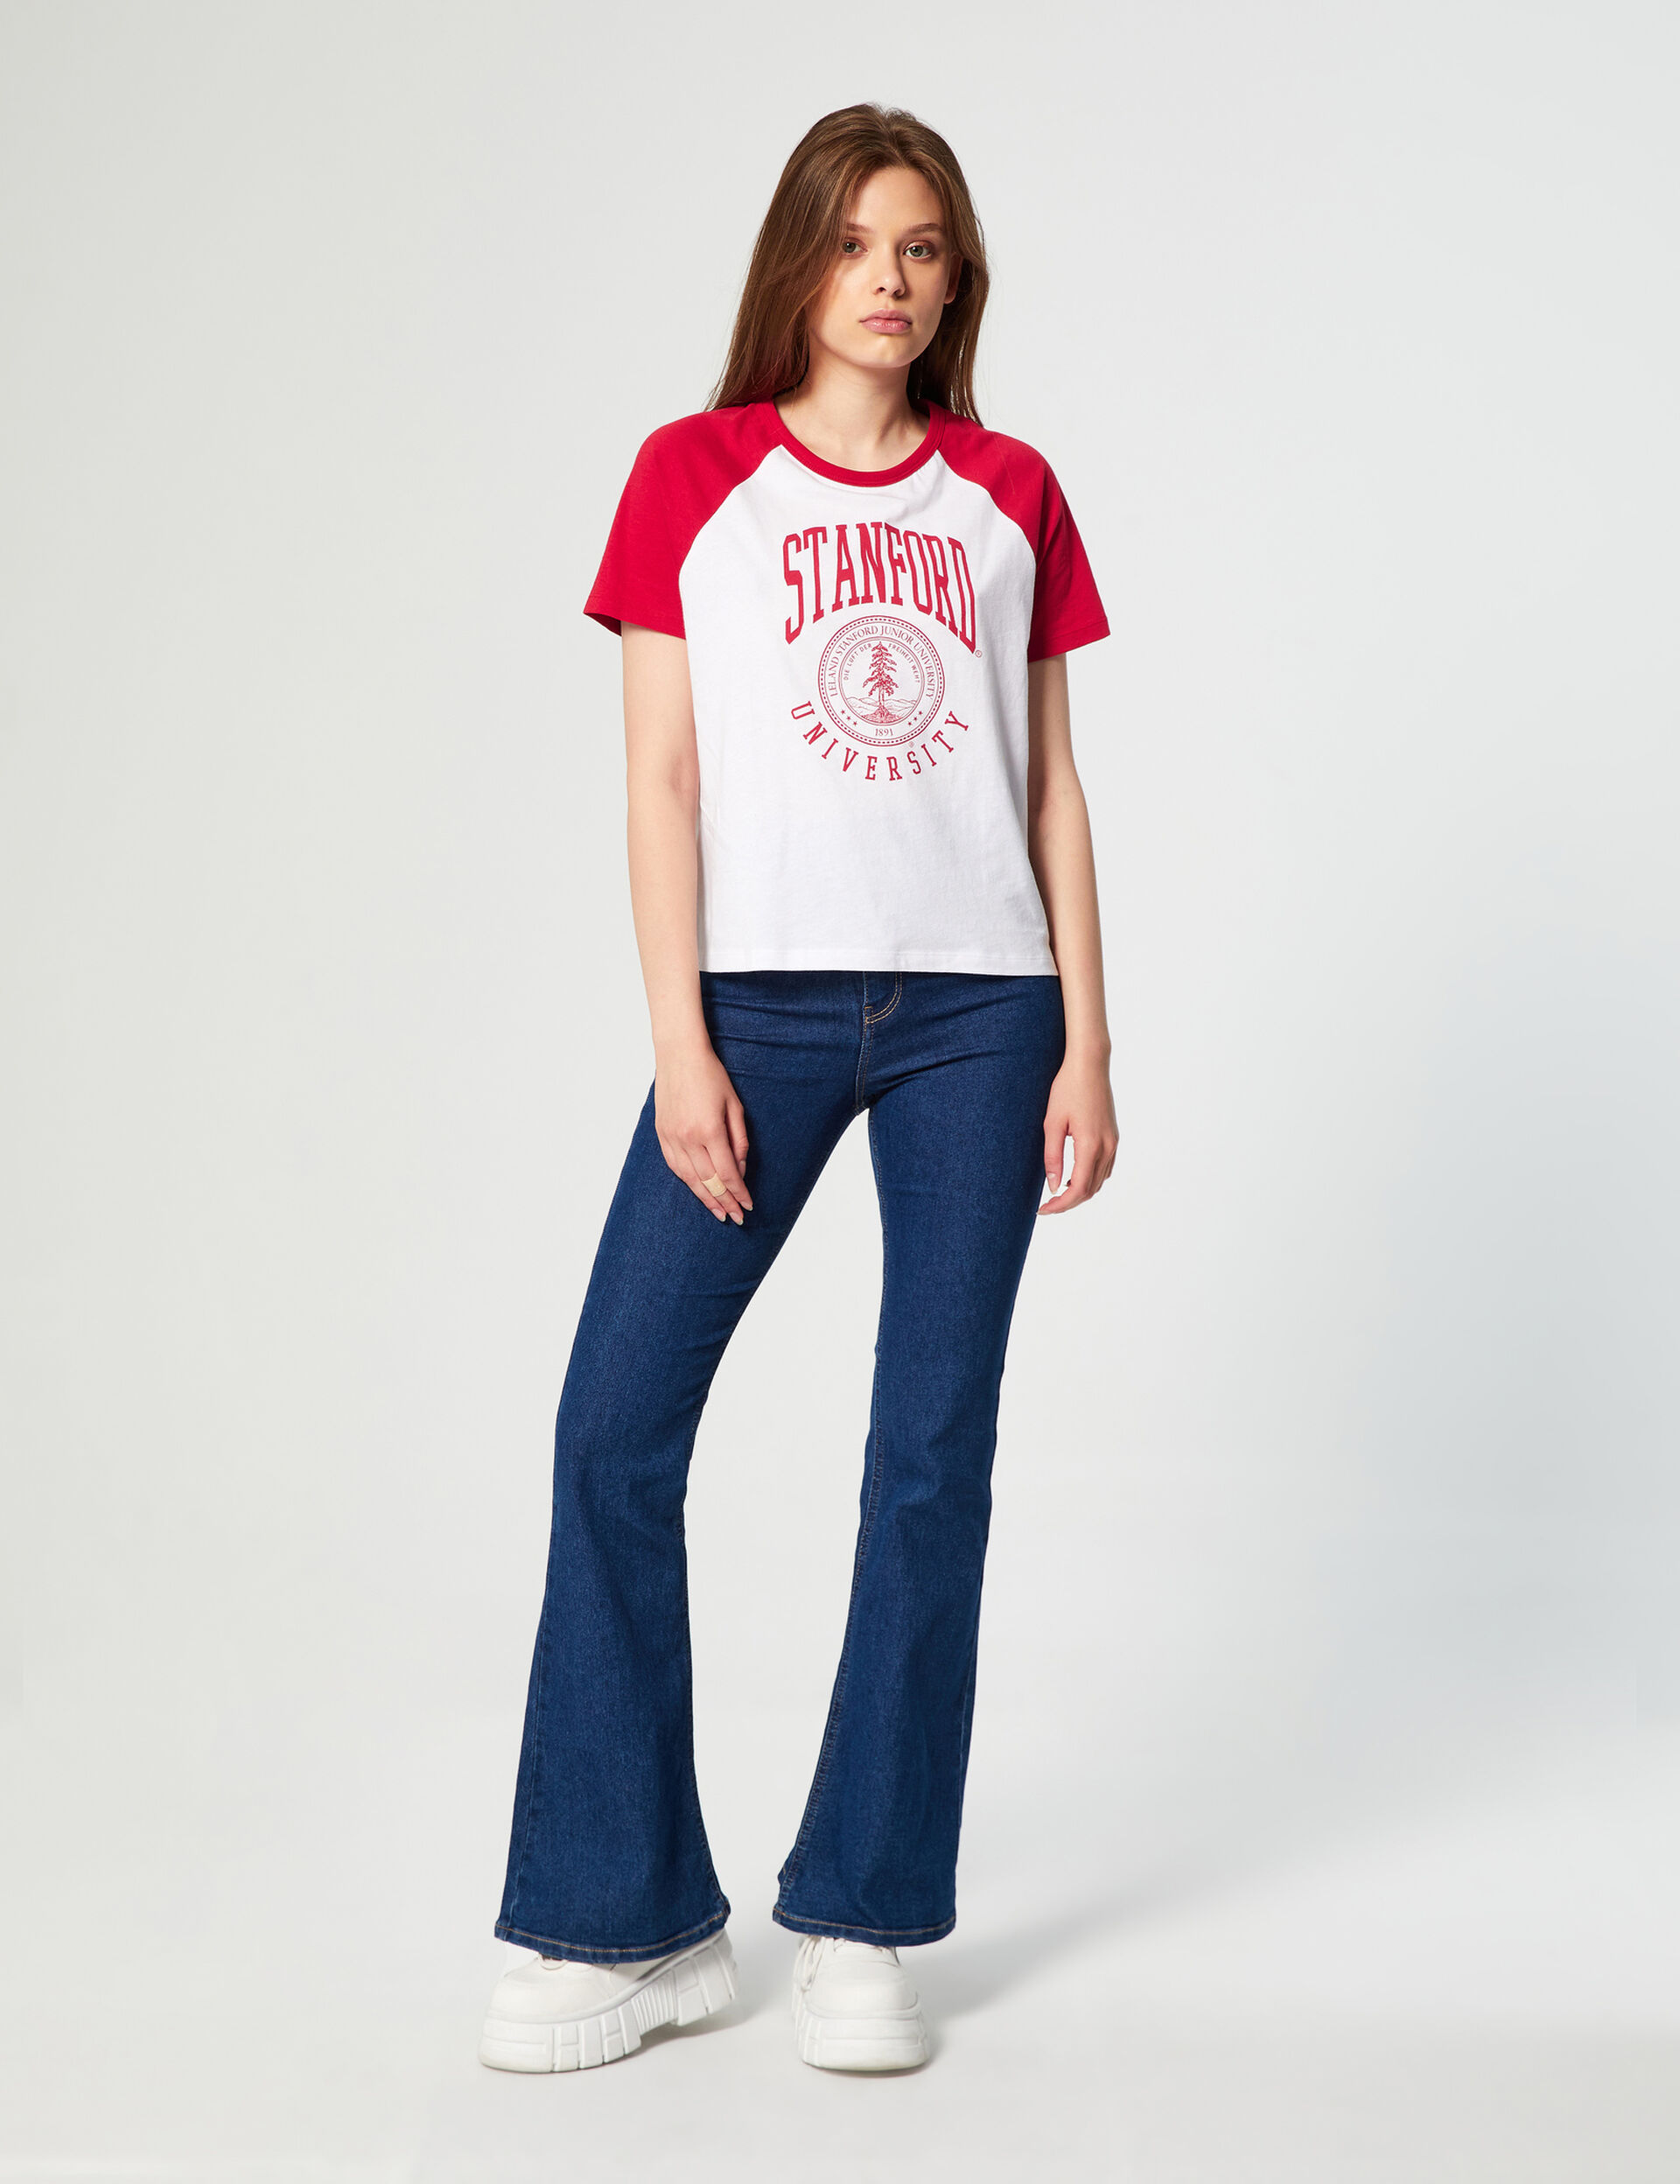 Tee-shirt Standford University